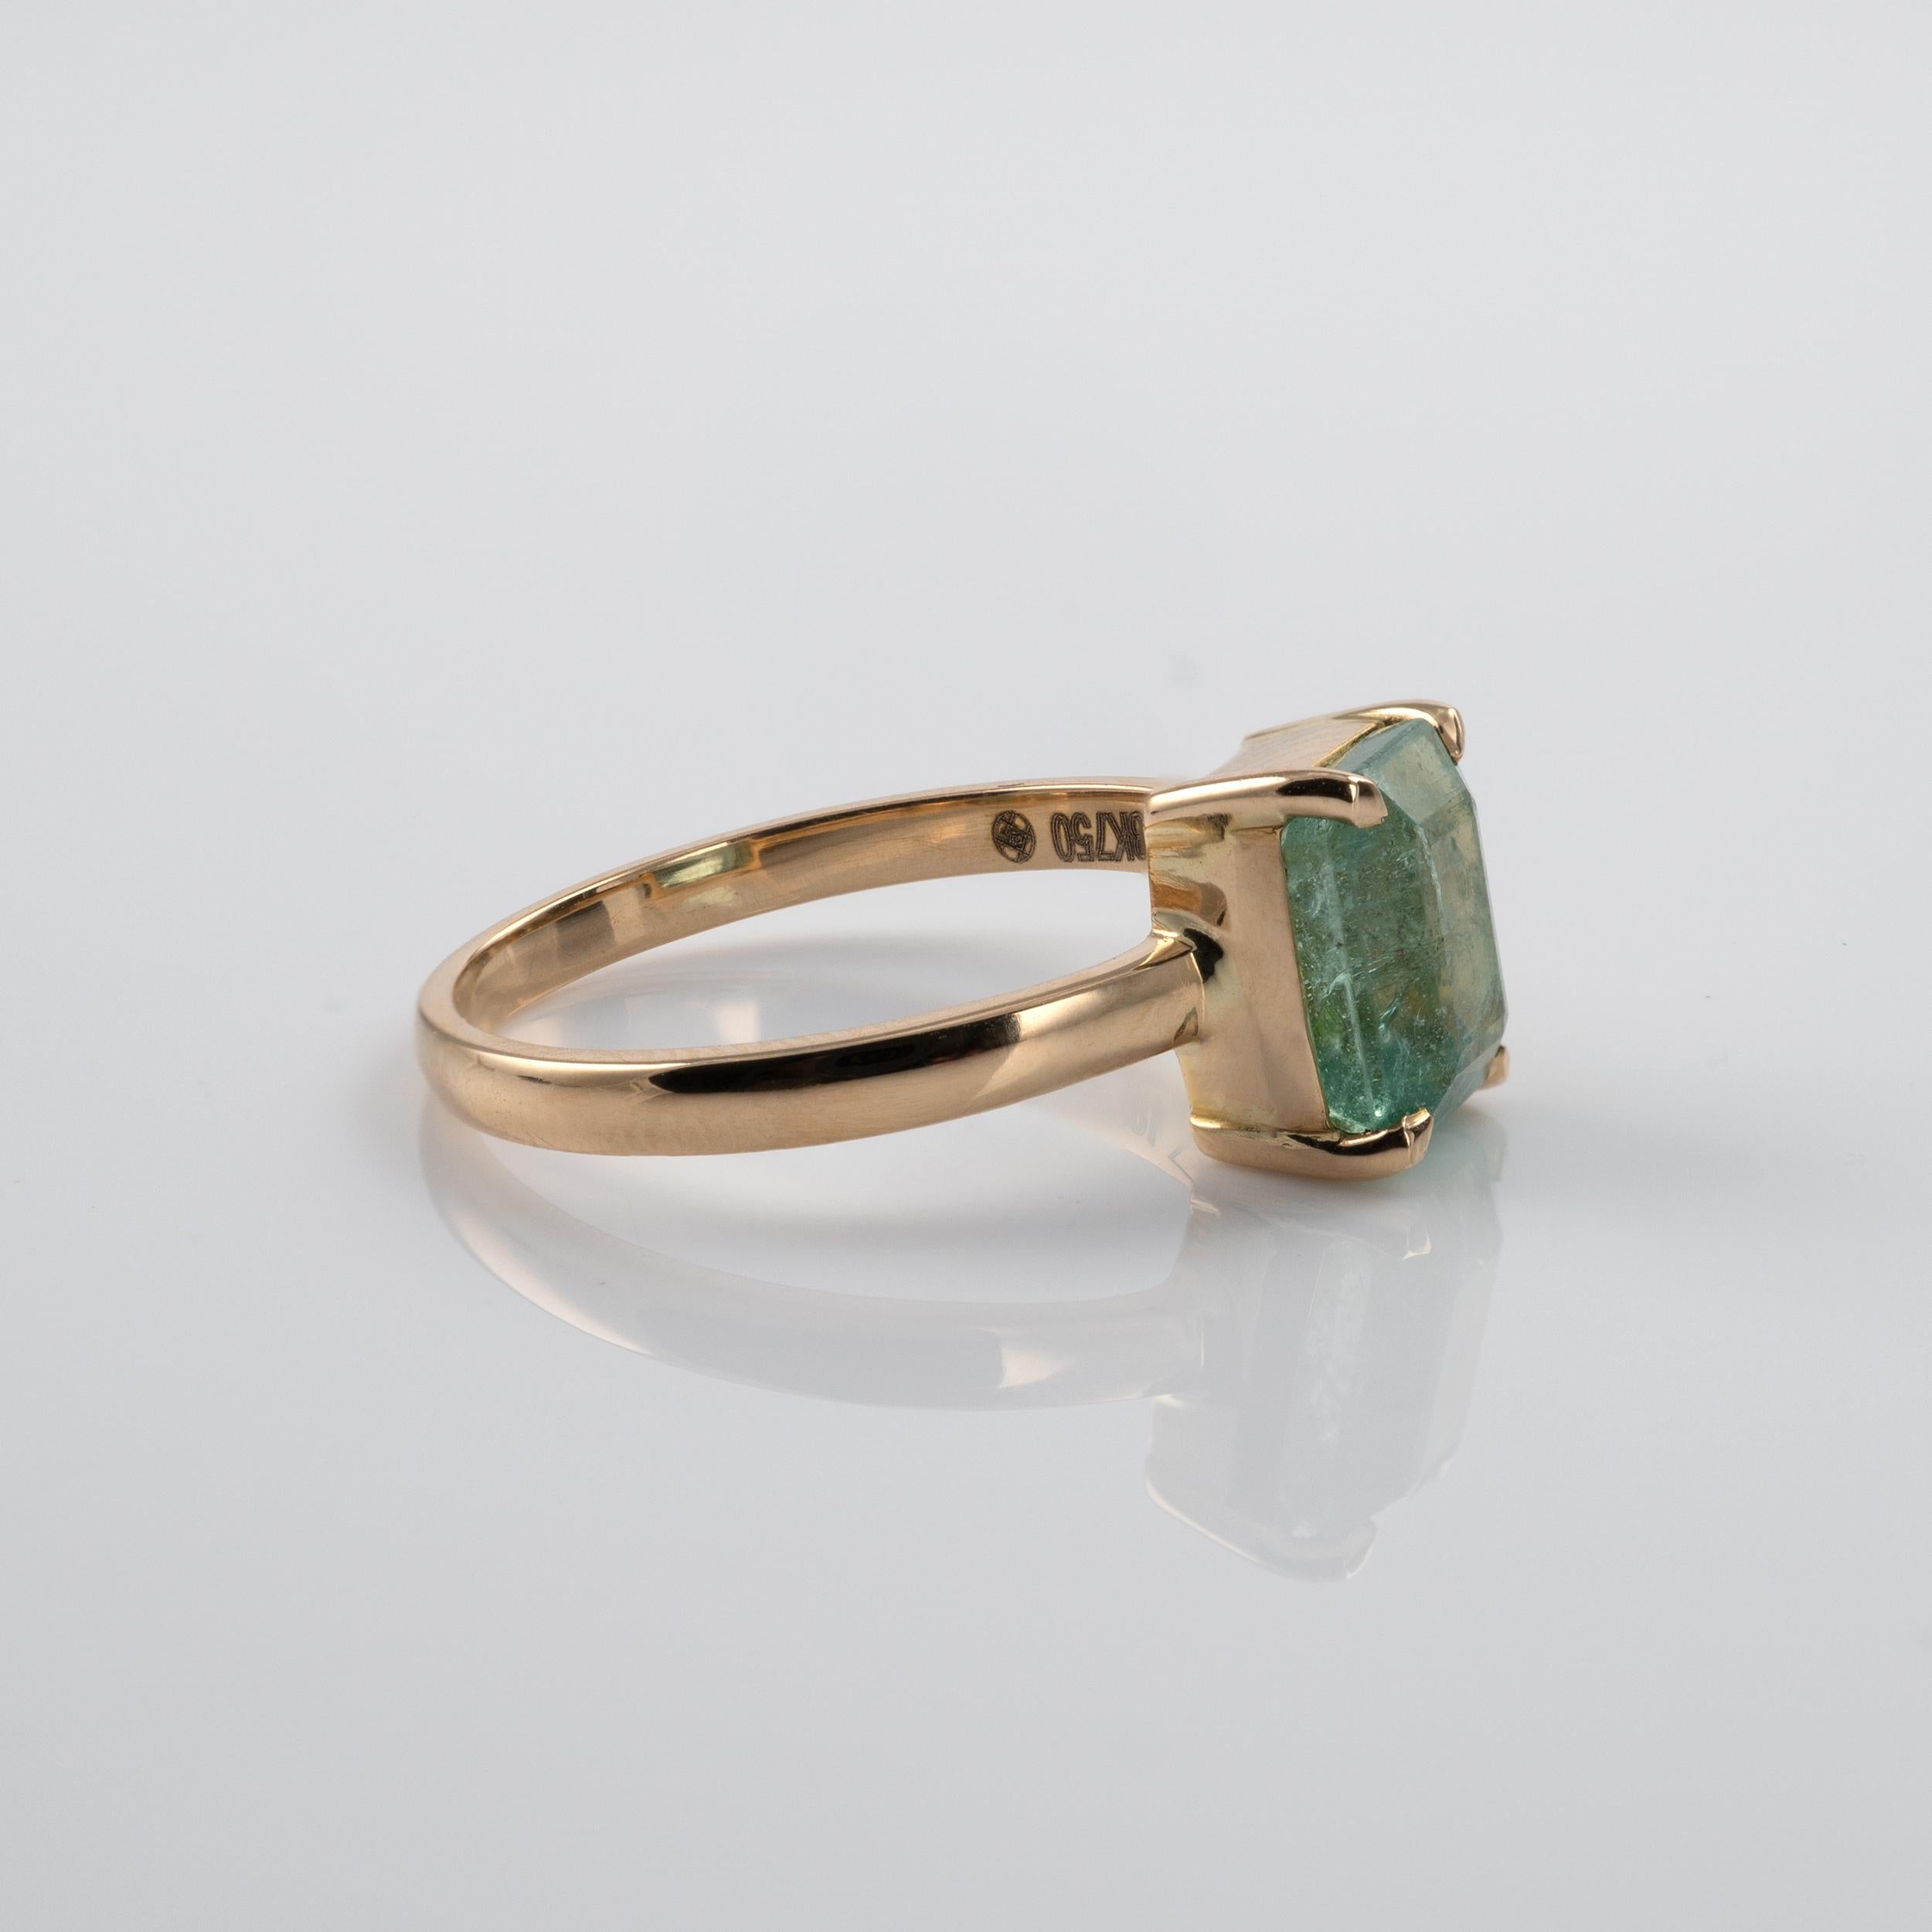 Octagon Cut Natural 1.5 Carat Columbian Emerald Solitaire Ring 18 Karat Yellow Gold